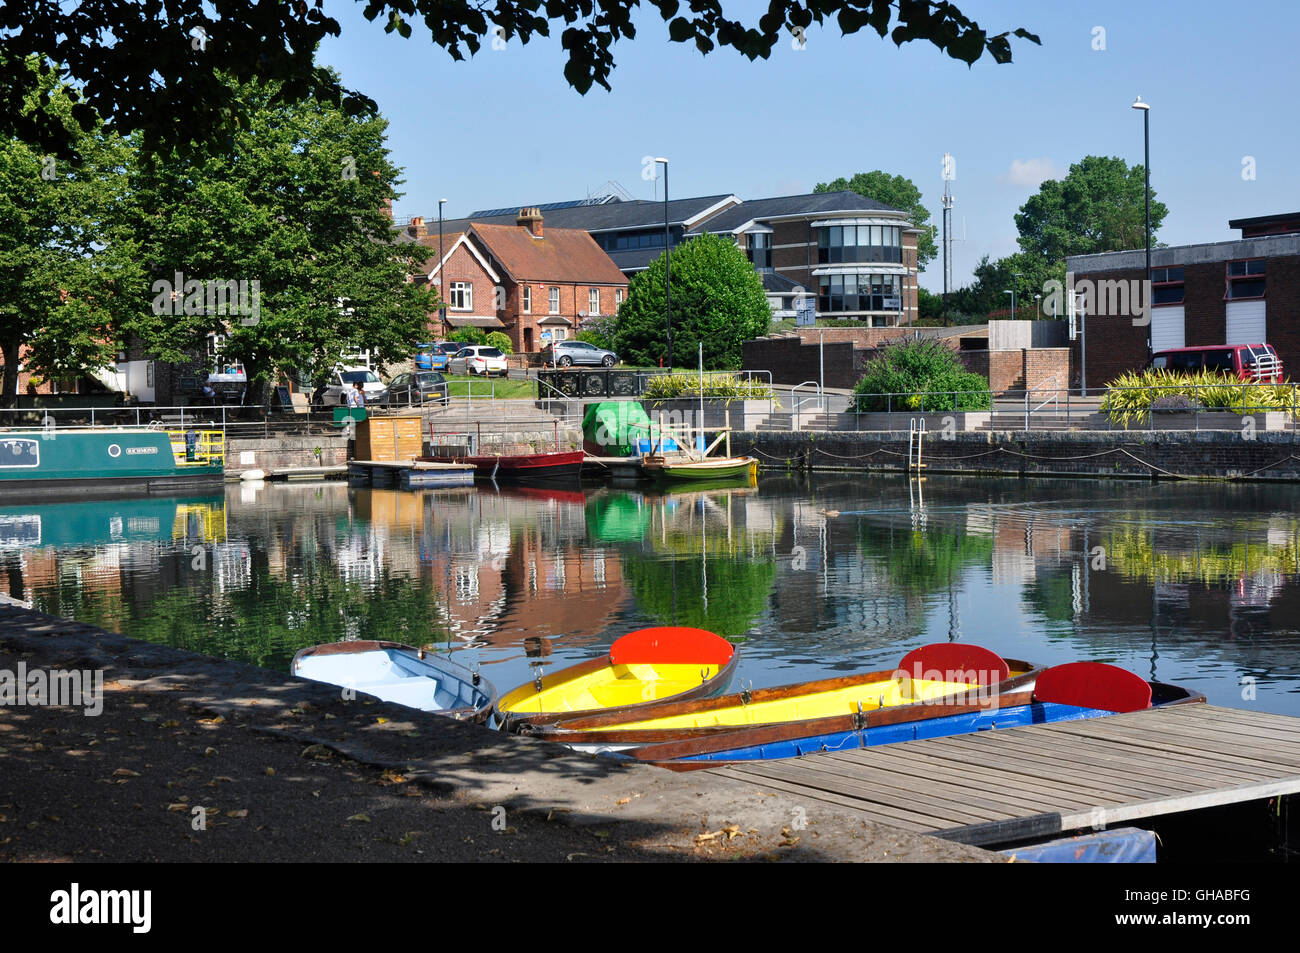 Chichester bassin du canal - bateaux amarrés colorés - l'été du soleil et les ombres - Réflexions - toile de la ville Banque D'Images